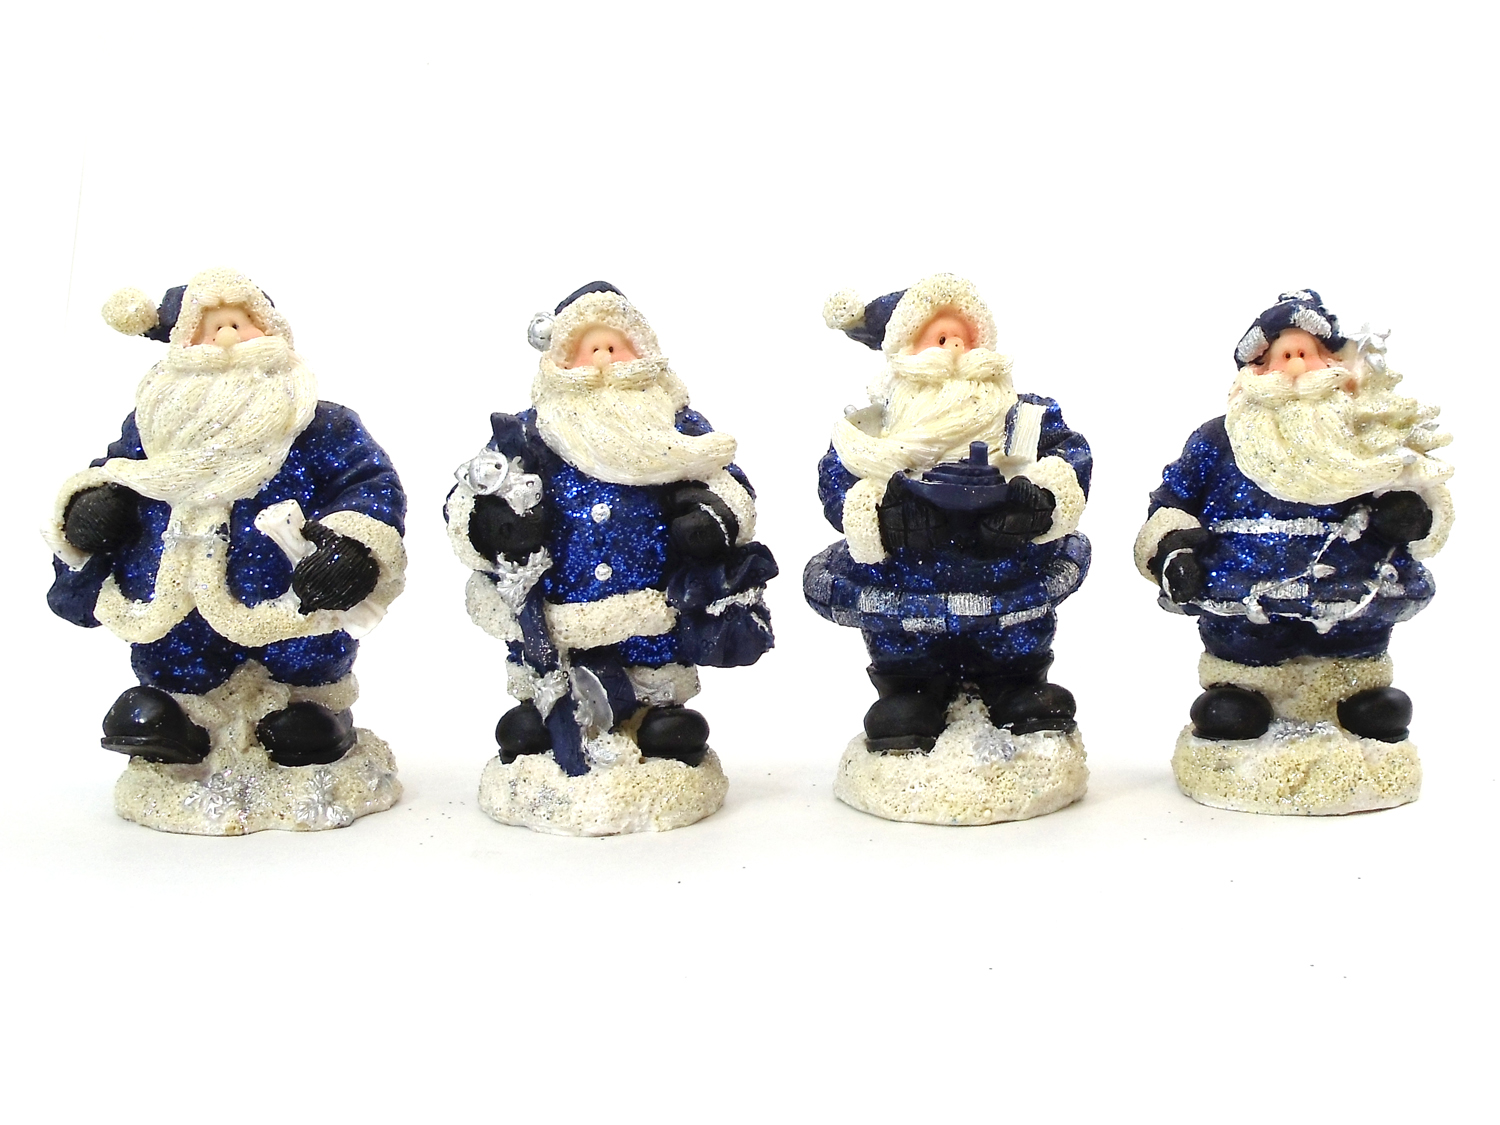 One Dozen 4" Blue Glitter Resin Santas In Four Assorted Models